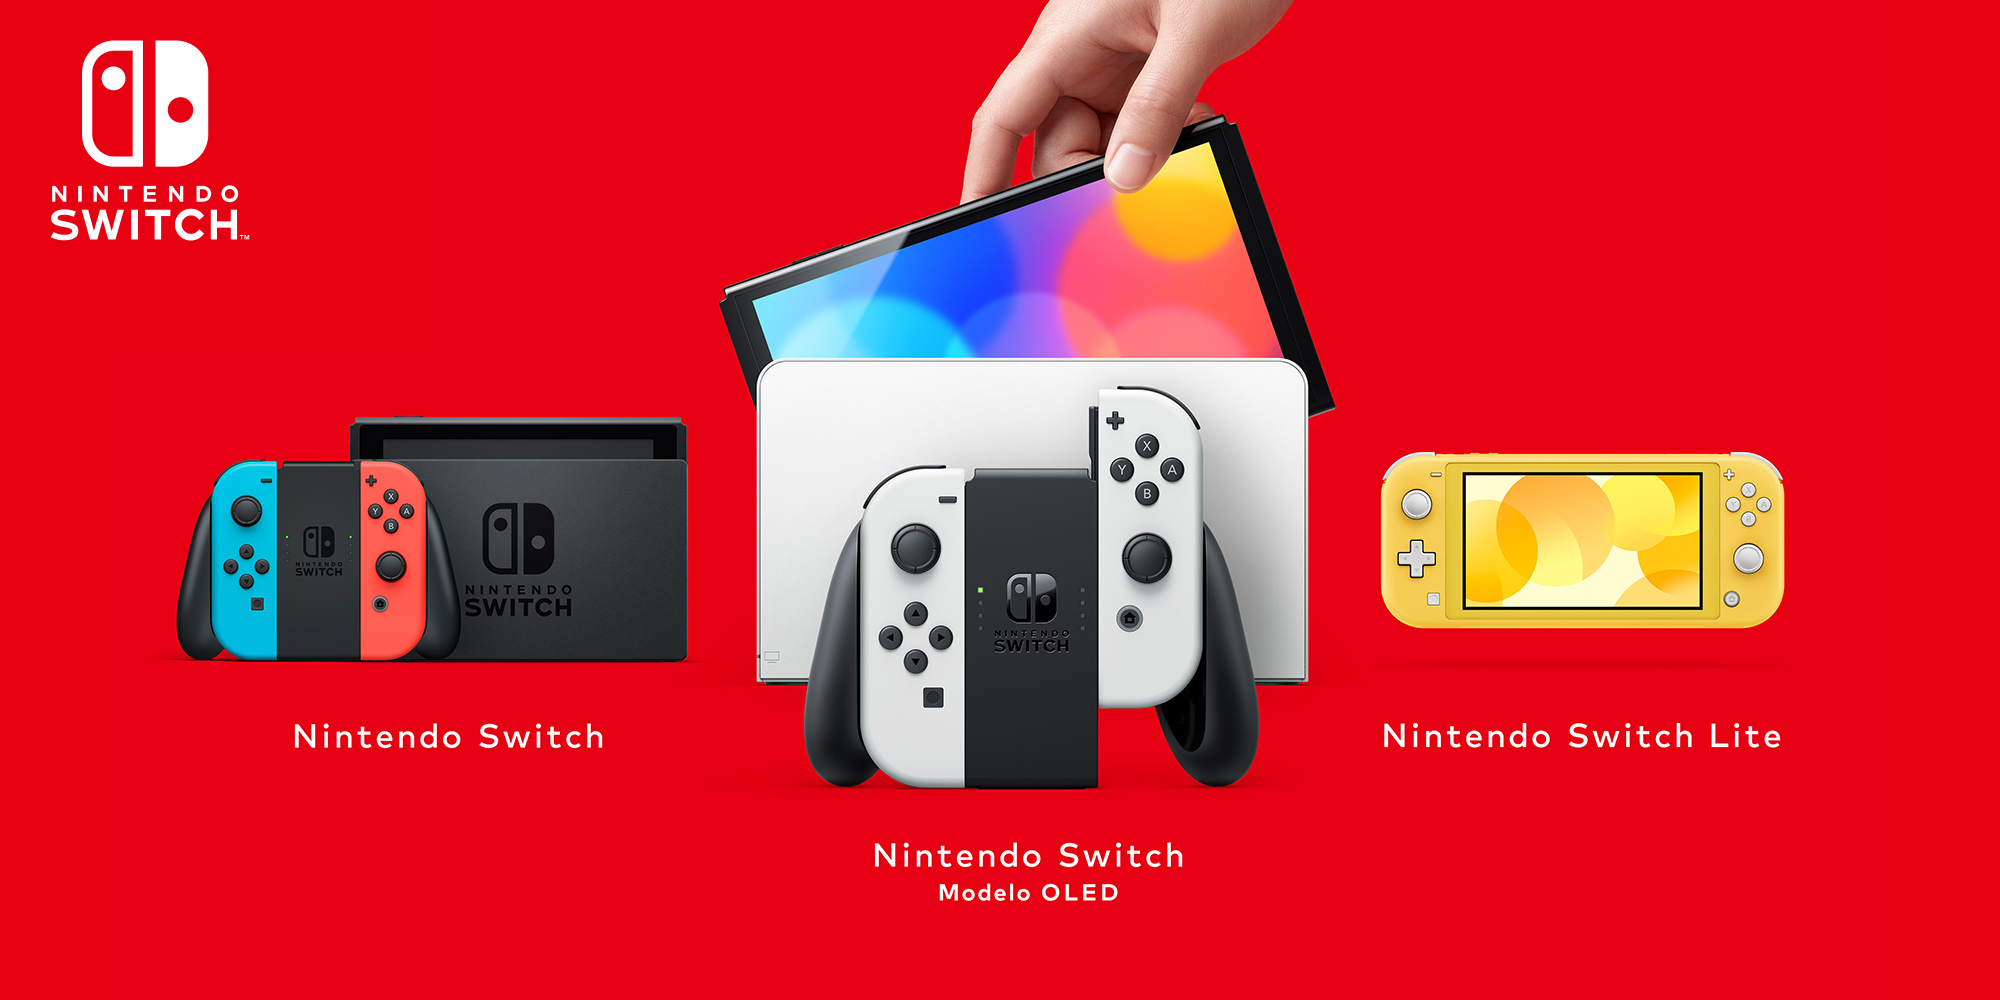 ¿Papá Noel te ha dejado una Nintendo Switch? Descubre más cosas sobre tu flamante consola